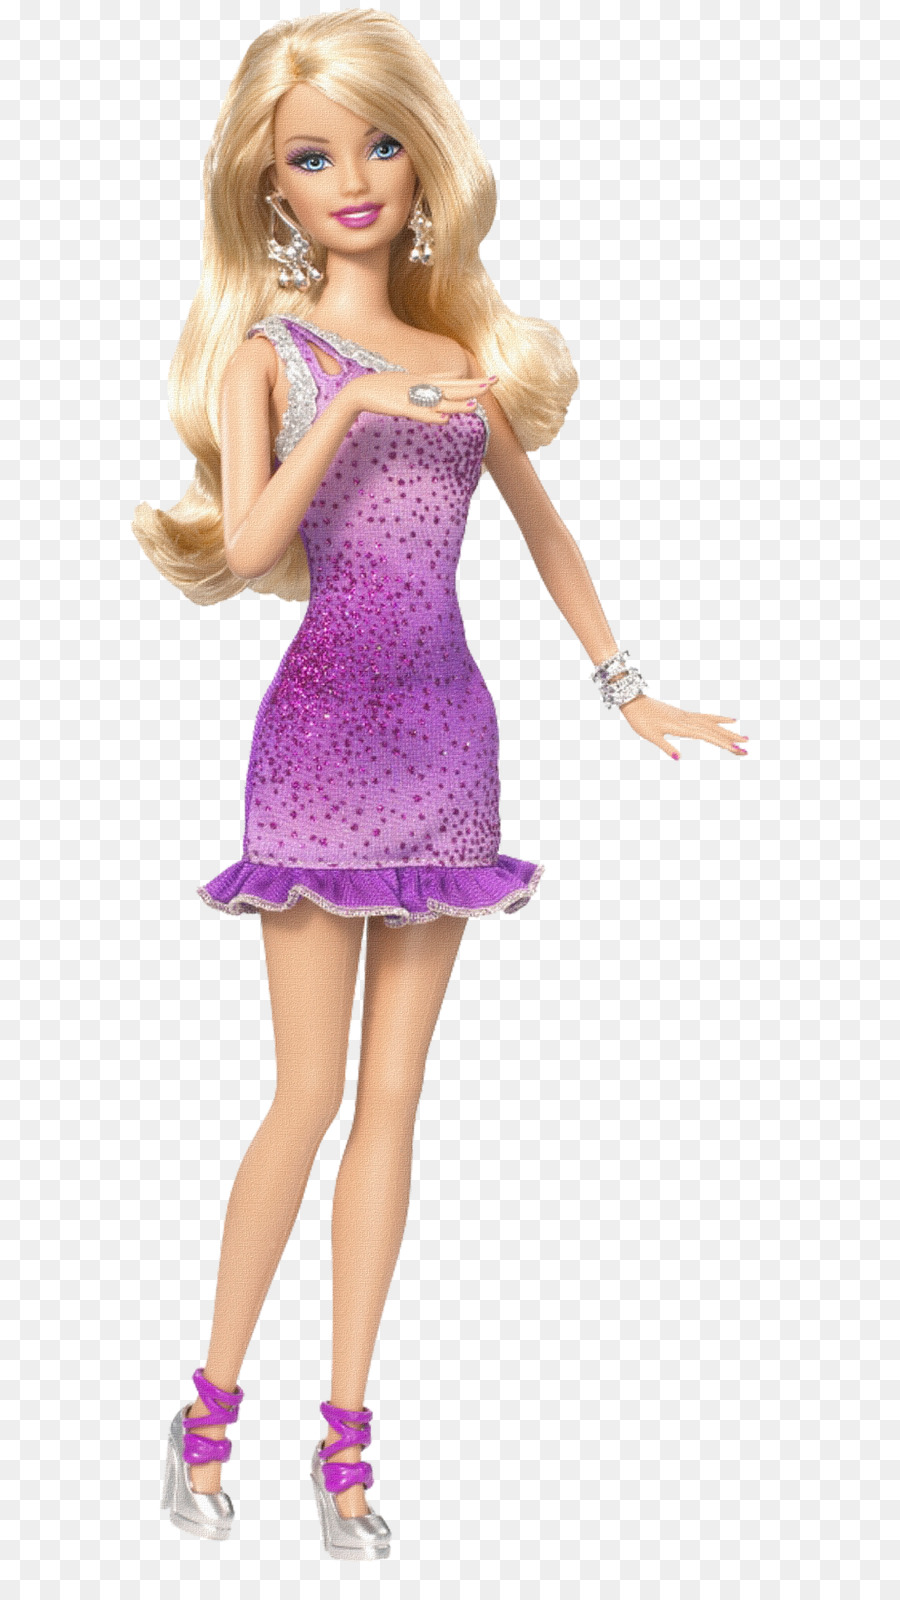 Barbie: A Fashion Fairytale Ken Clip art - barbie png download - 686*1600 - Free Transparent Barbie A Fashion Fairytale png Download.